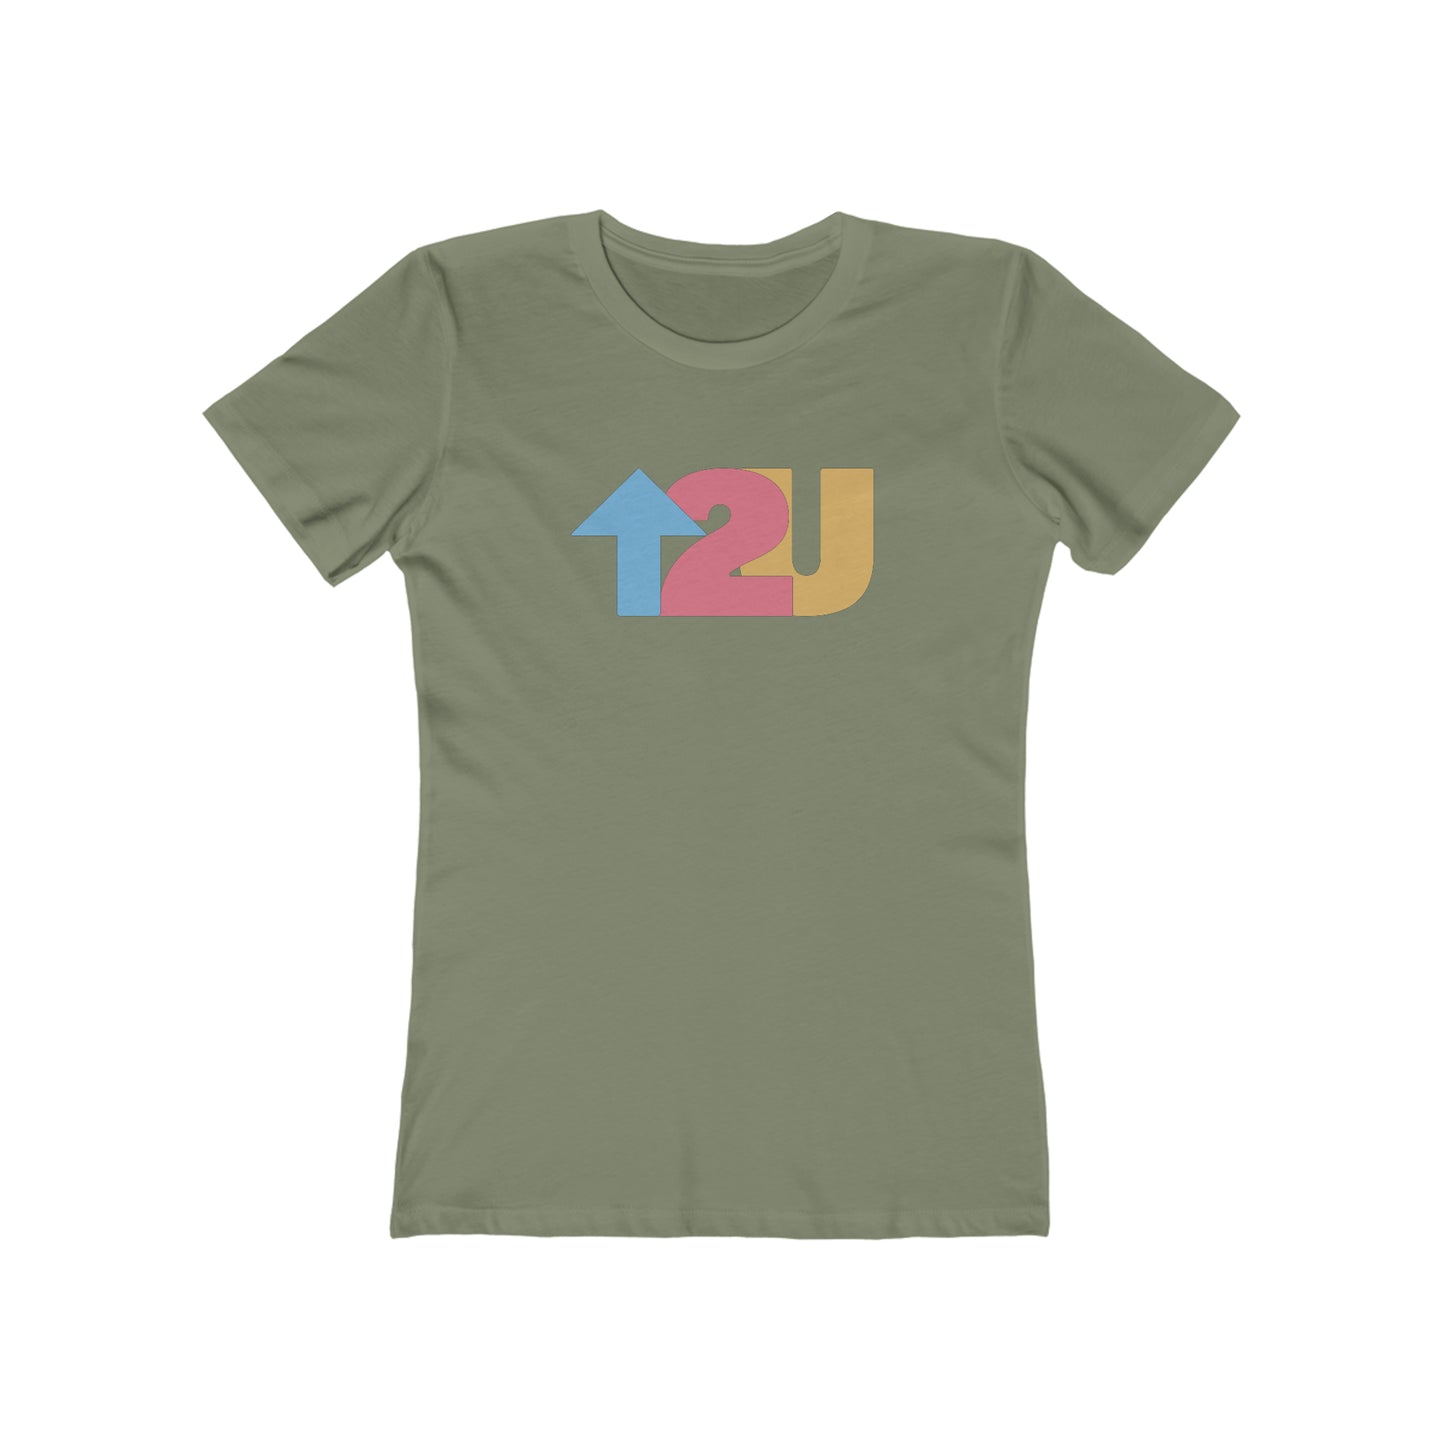 Up To You - Women's T-Shirt